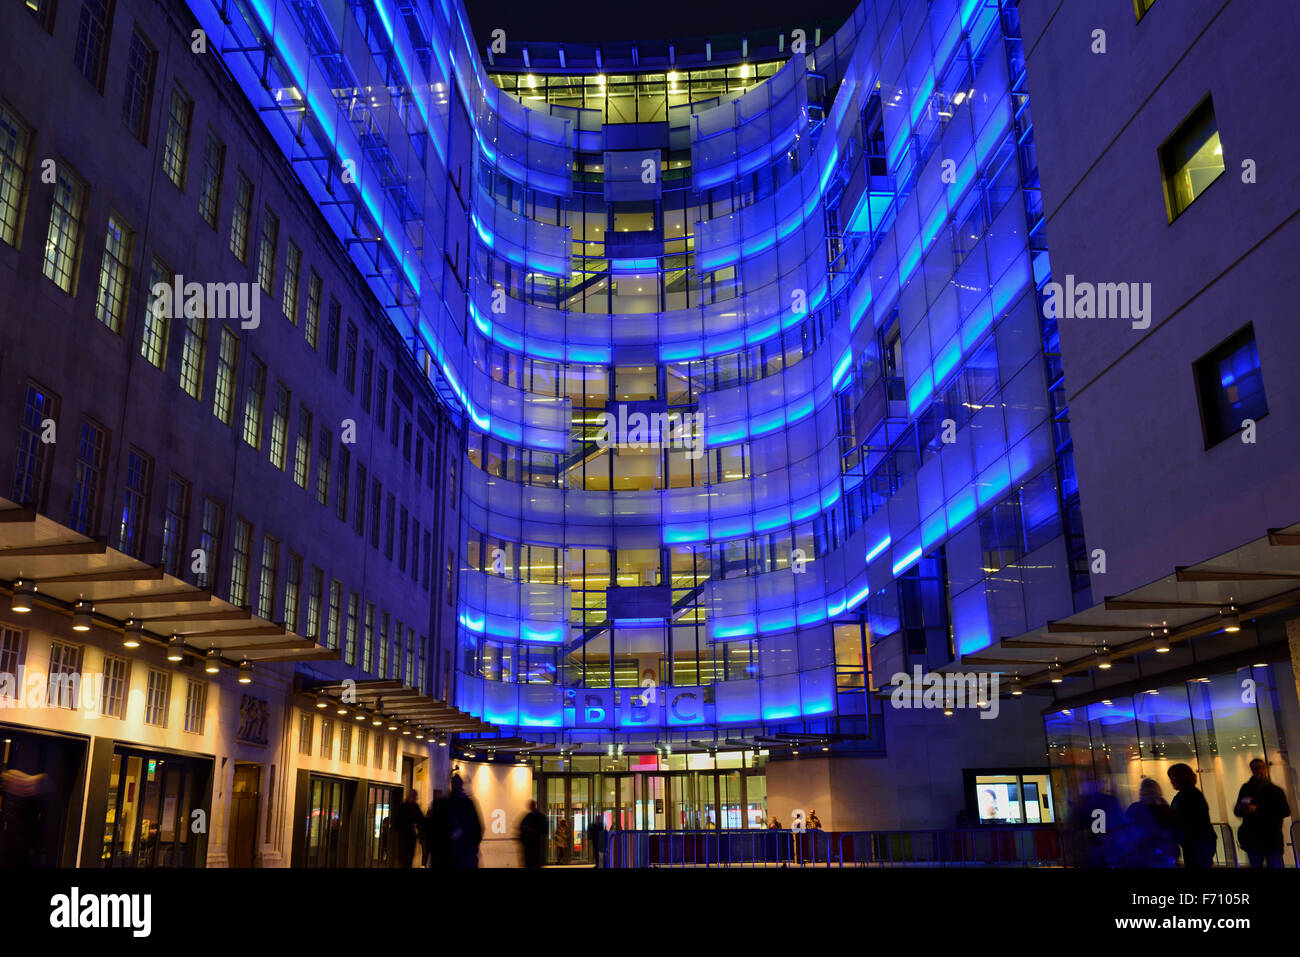 BBC Broadcasting House ala di collegamento con illuminazione blu, Portland Place, London W1A, Regno Unito Foto Stock